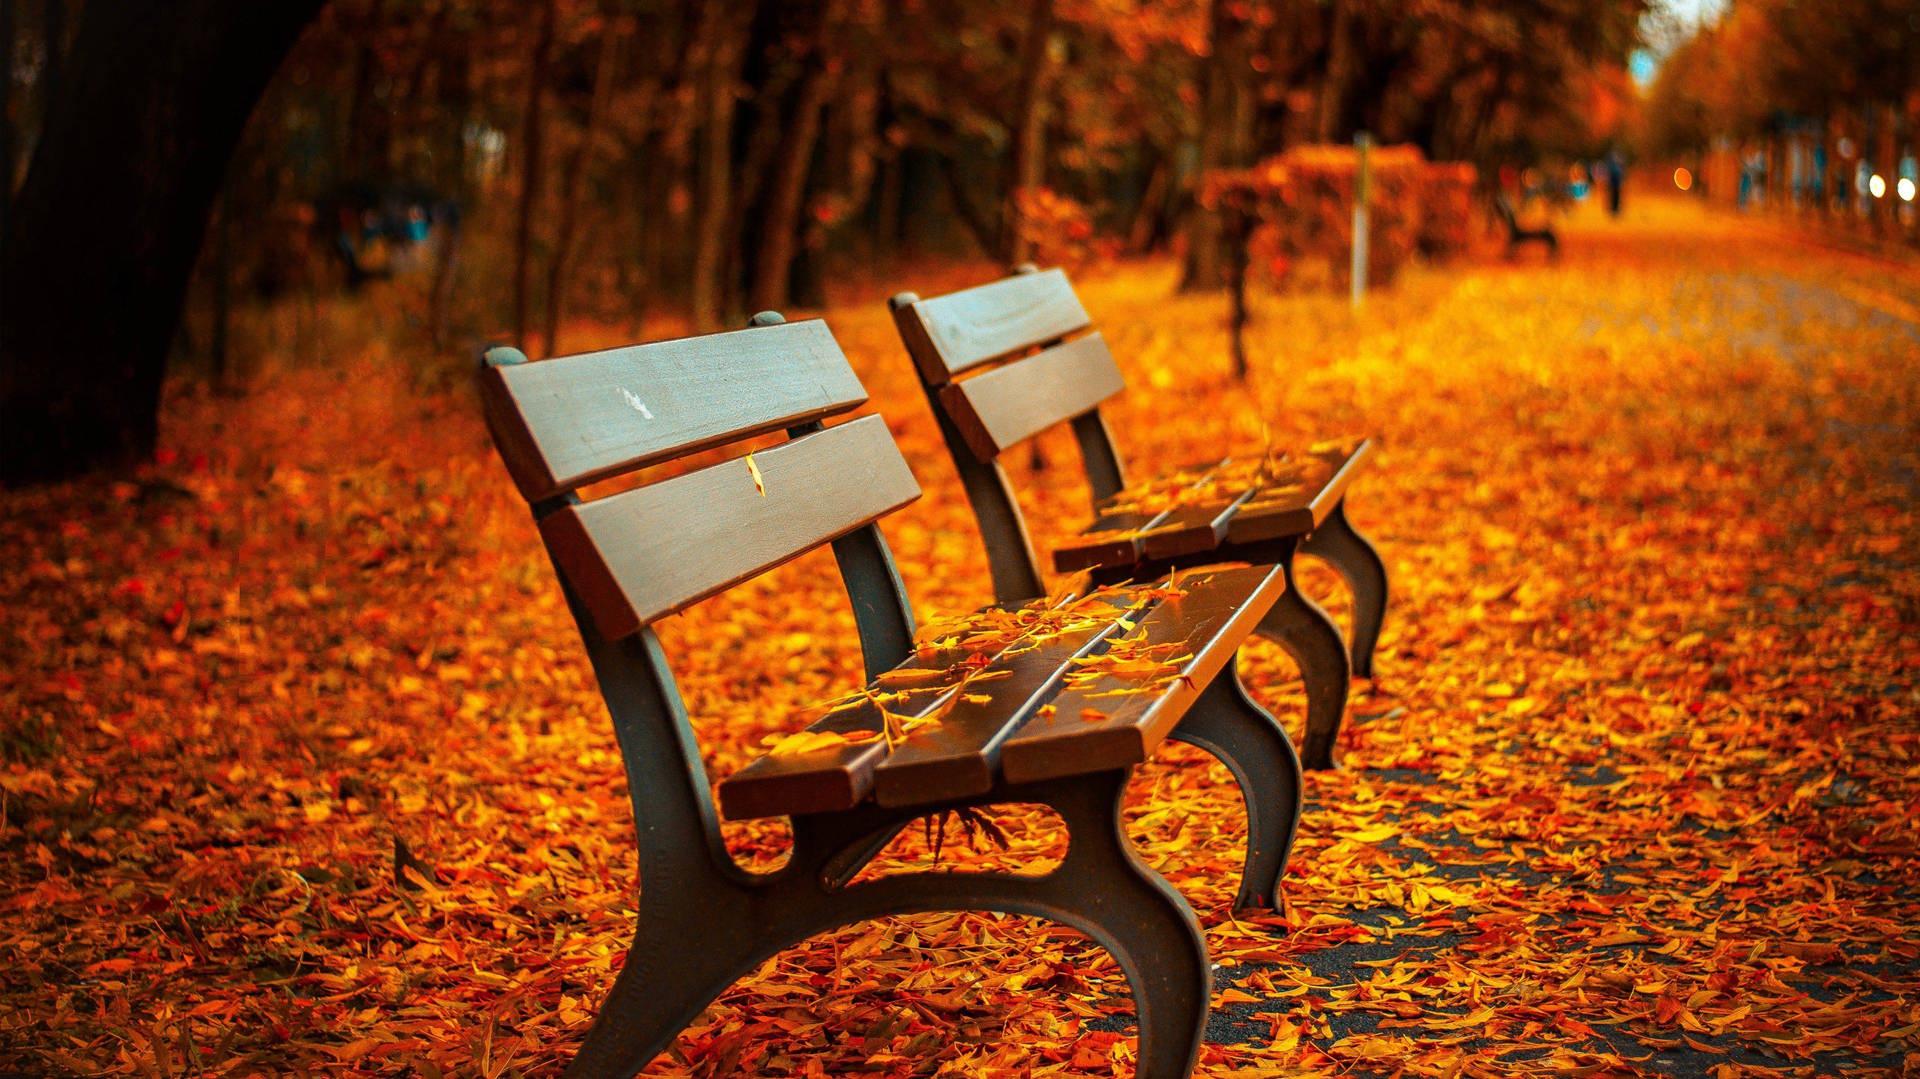 Autumn Scenery In Stunning 4k UHD Resolution Wallpaper